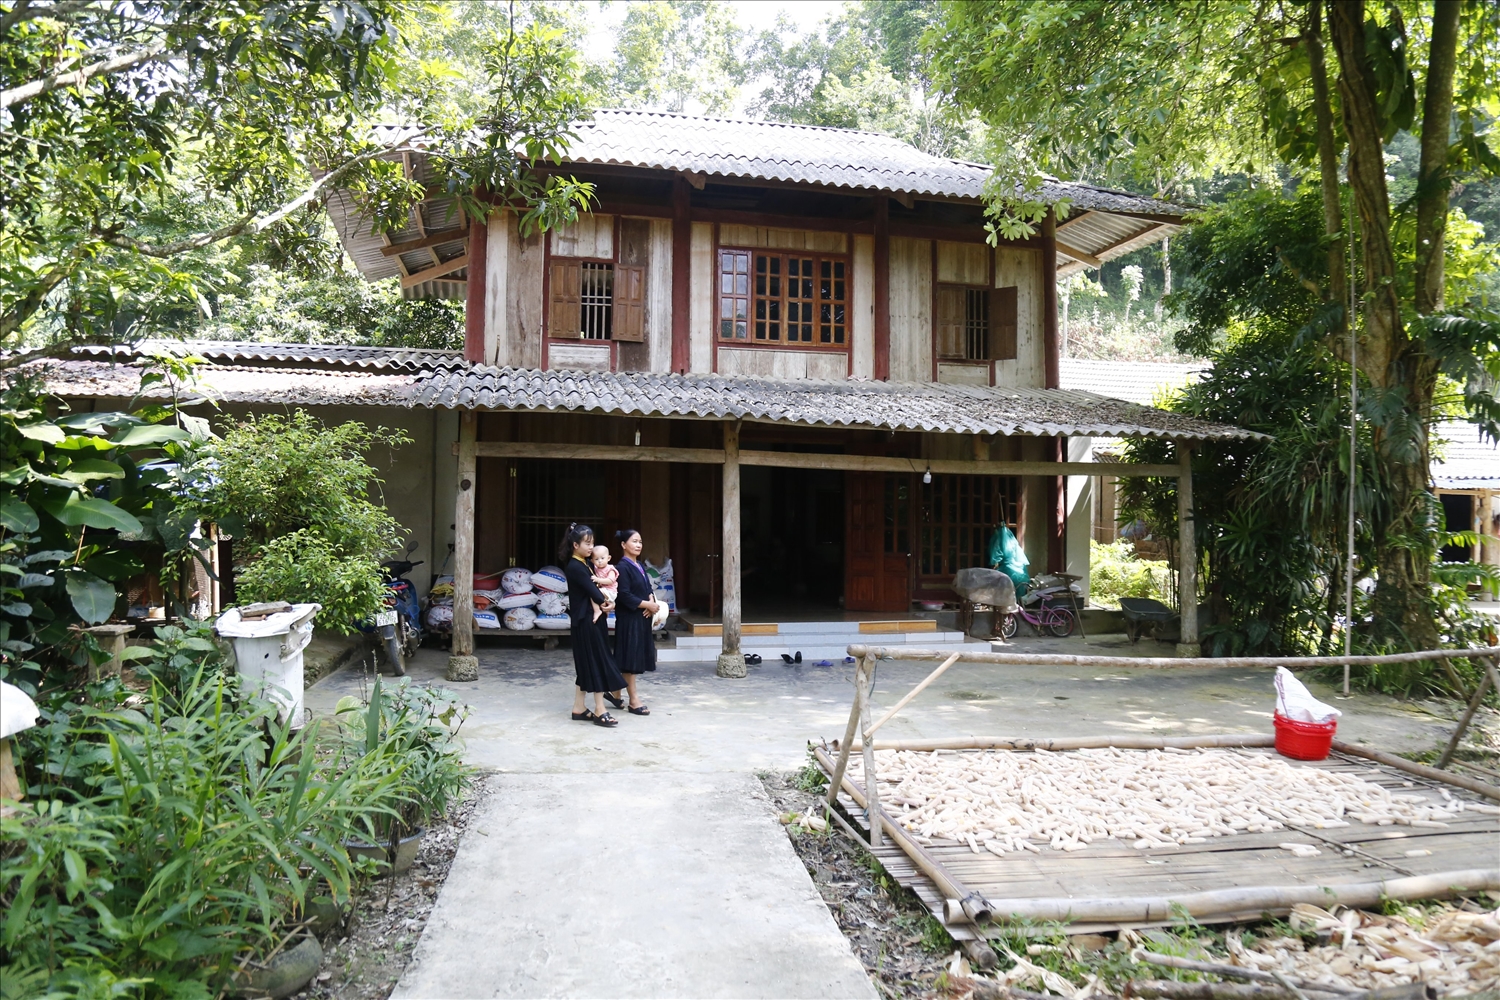 Nếp nhà truyền thống của người Tống ở Tuyên Quang